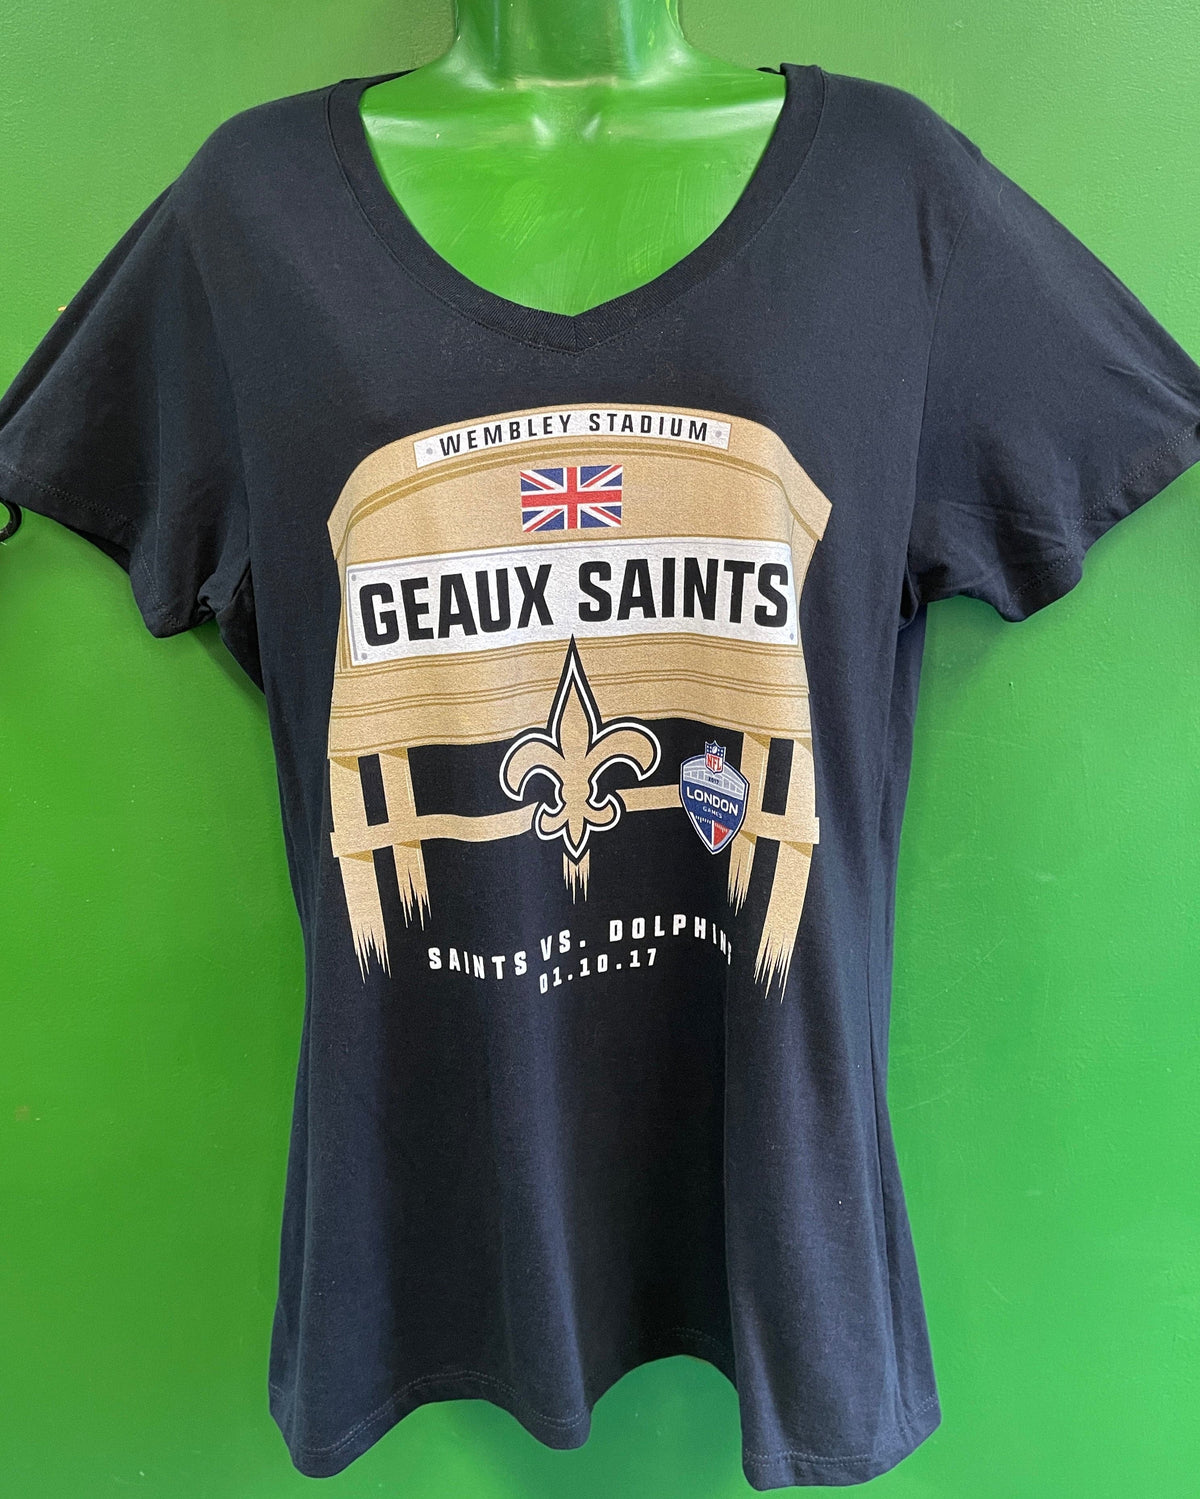 NFL New Orleans Saints Fanatics London Games 2017 T-Shirt Women's Large NWT